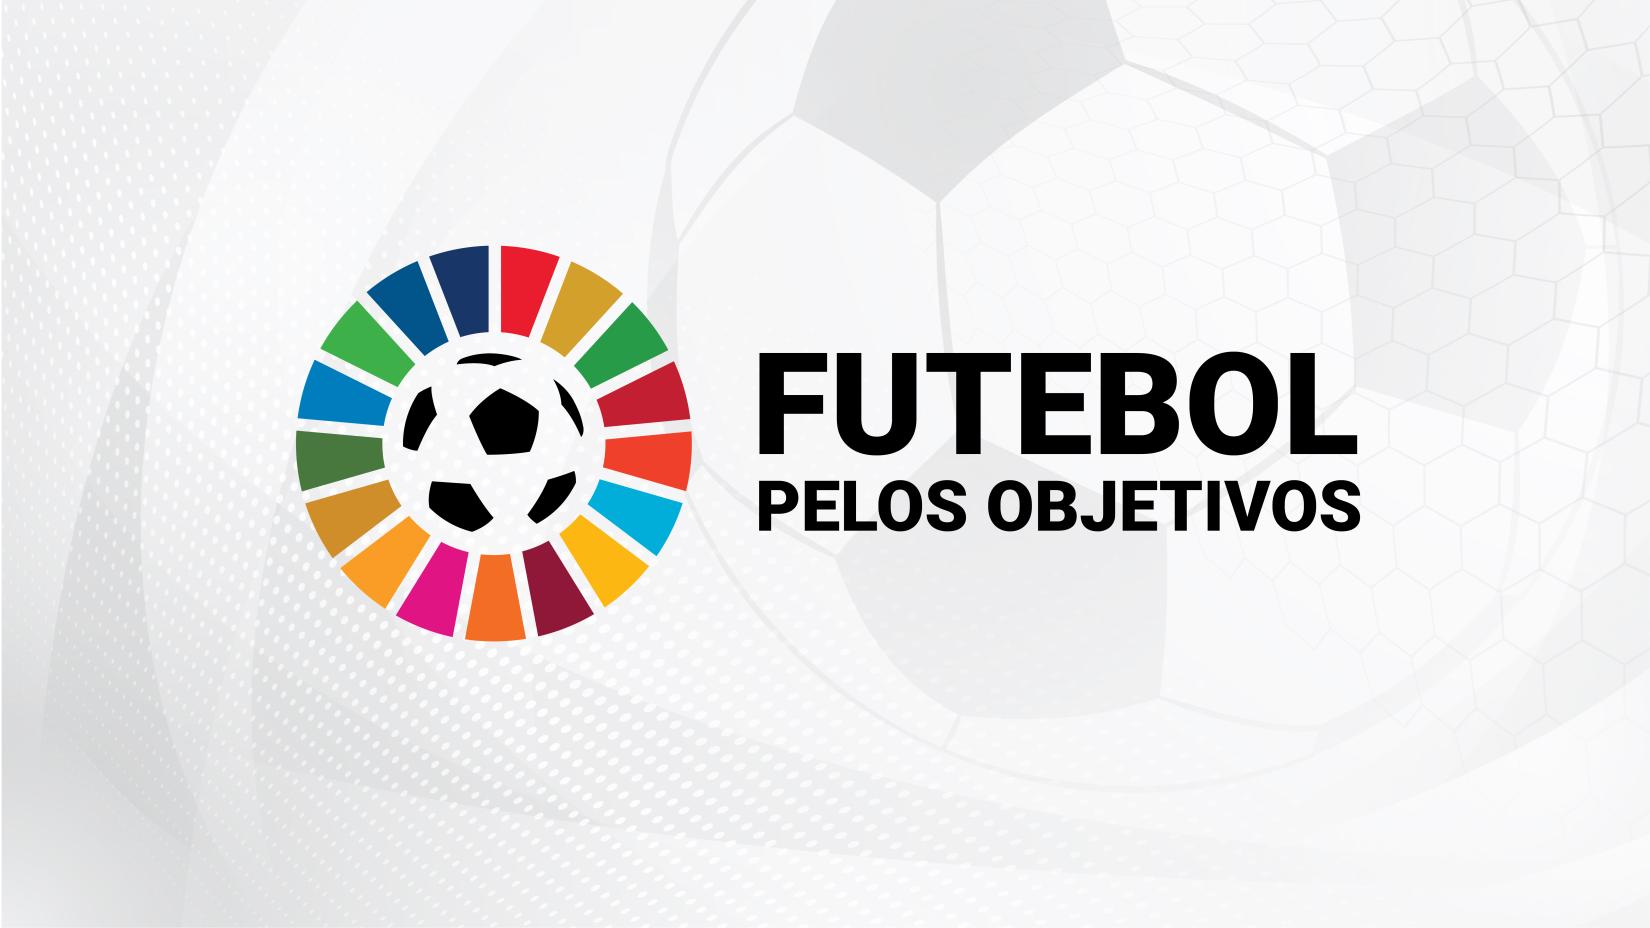 Nova campanha das Nações Unidas conta com o apoio da União das Associações Europeias de Futebol (UEFA).